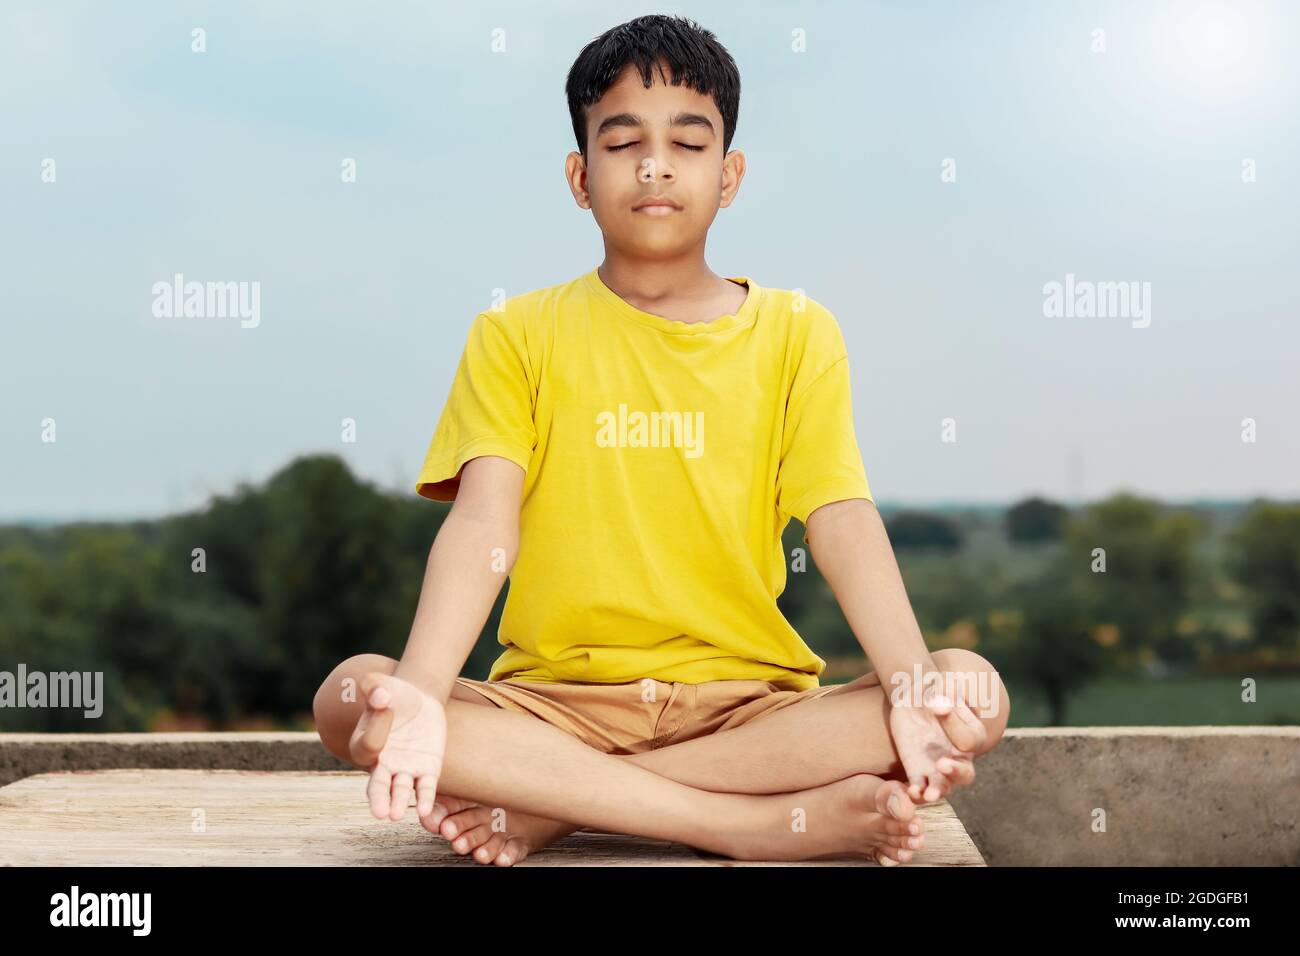 Un jeune enfant indien mignon faisant du yoga dans la posture de médiation. Banque D'Images